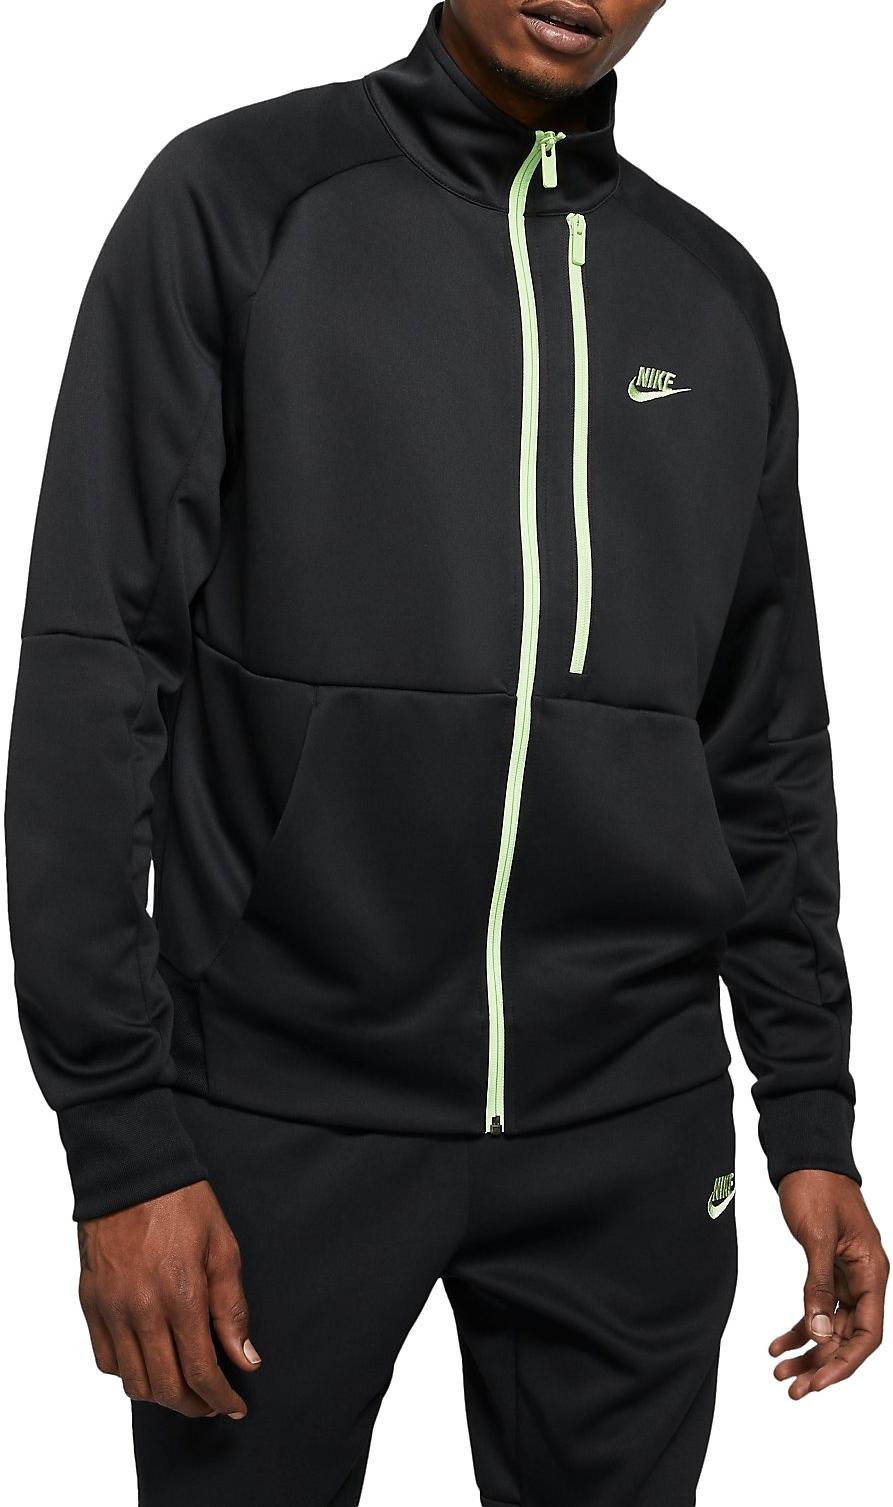 Guarda la ropa prefacio por favor confirmar Chaqueta Nike Sportswear Tribute Men s N98 Jacket - Top4Fitness.es